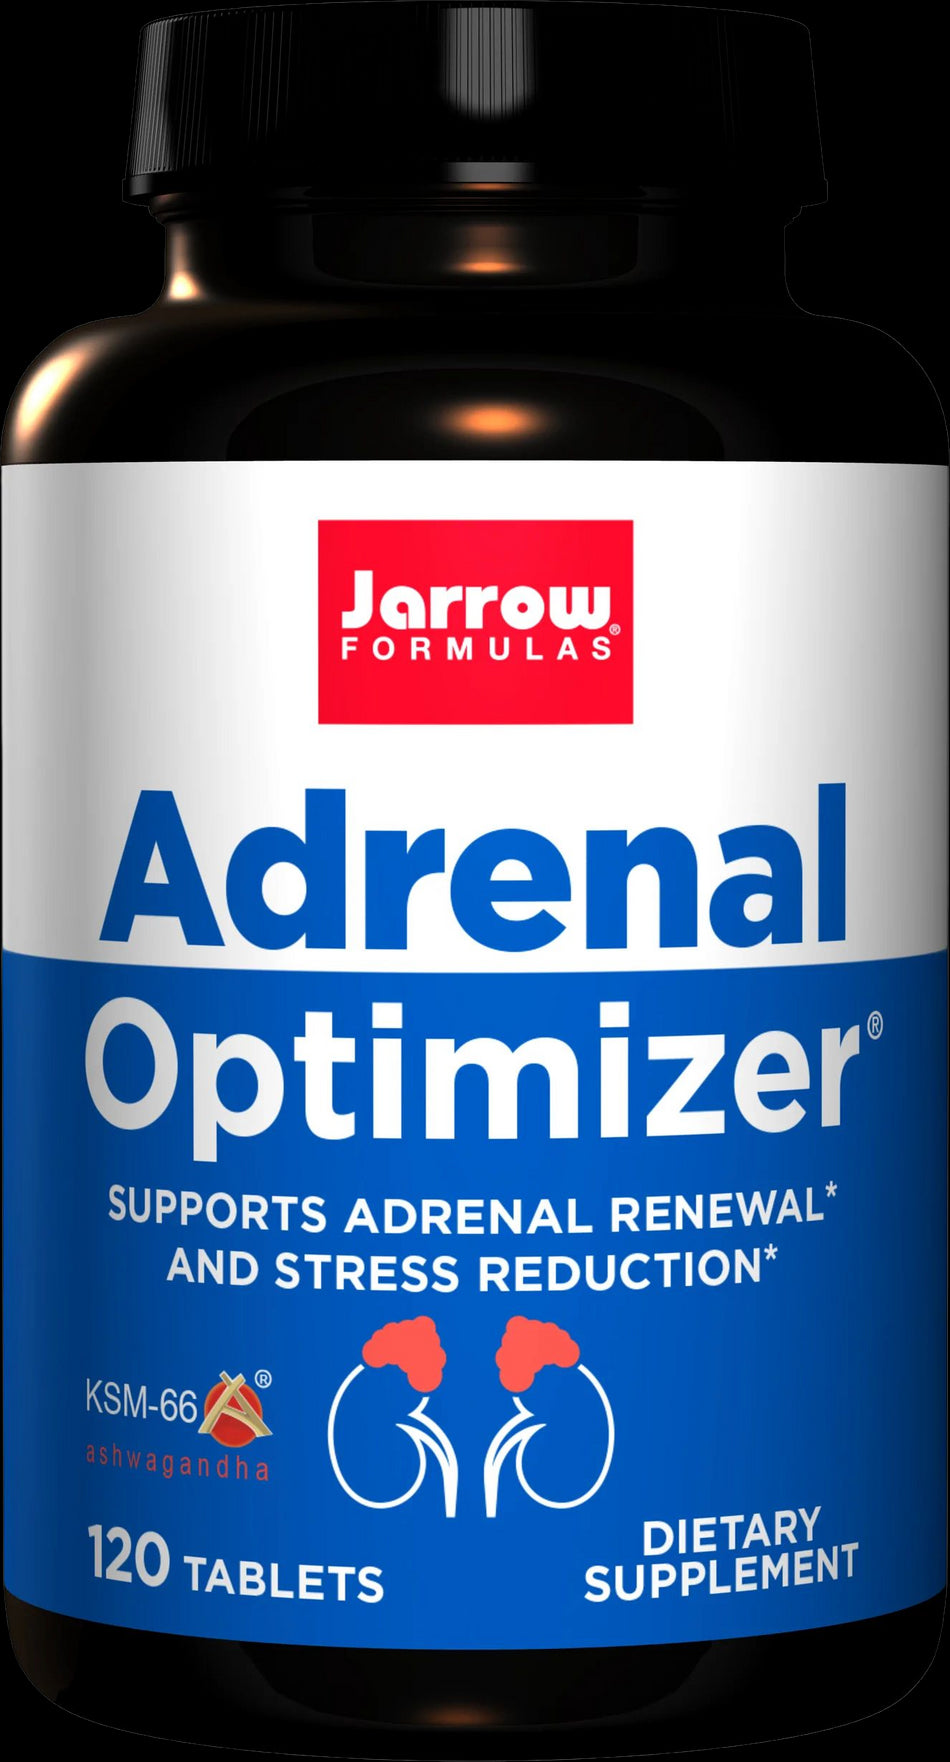 Adrenal Optimizer - BadiZdrav.BG